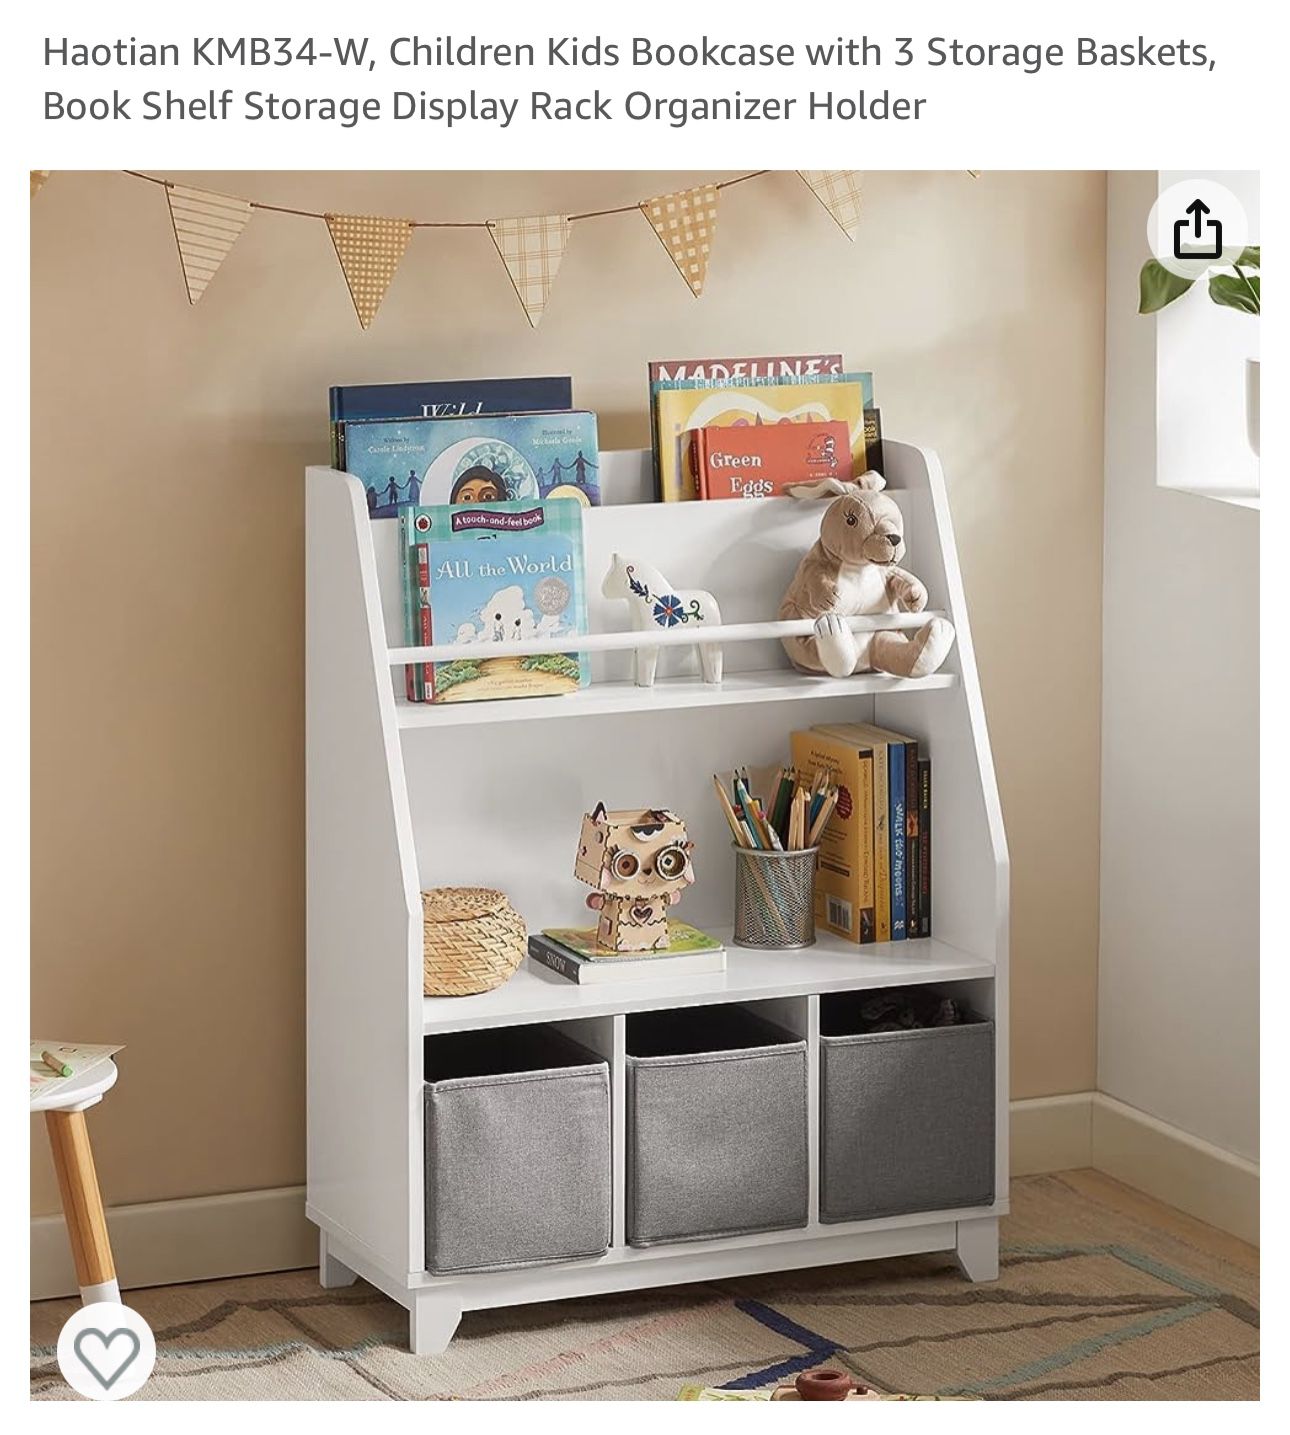 Haotian KMB34-W, Children Kids Bookcase with 3 Storage Baskets, Book Shelf Storage Display Rack Organizer Holder